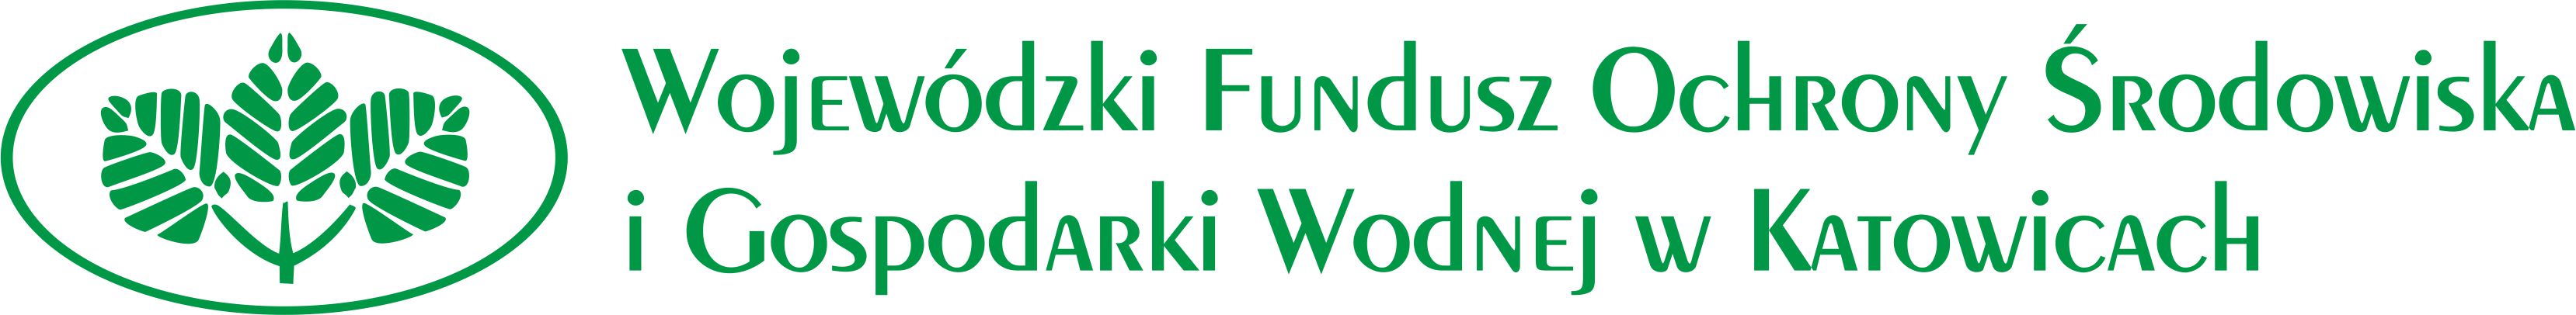 Logo wfośigw w Katowicach przedstawiające trzy listki w eliptycznej ramce oraz pełną nazwę funduszu